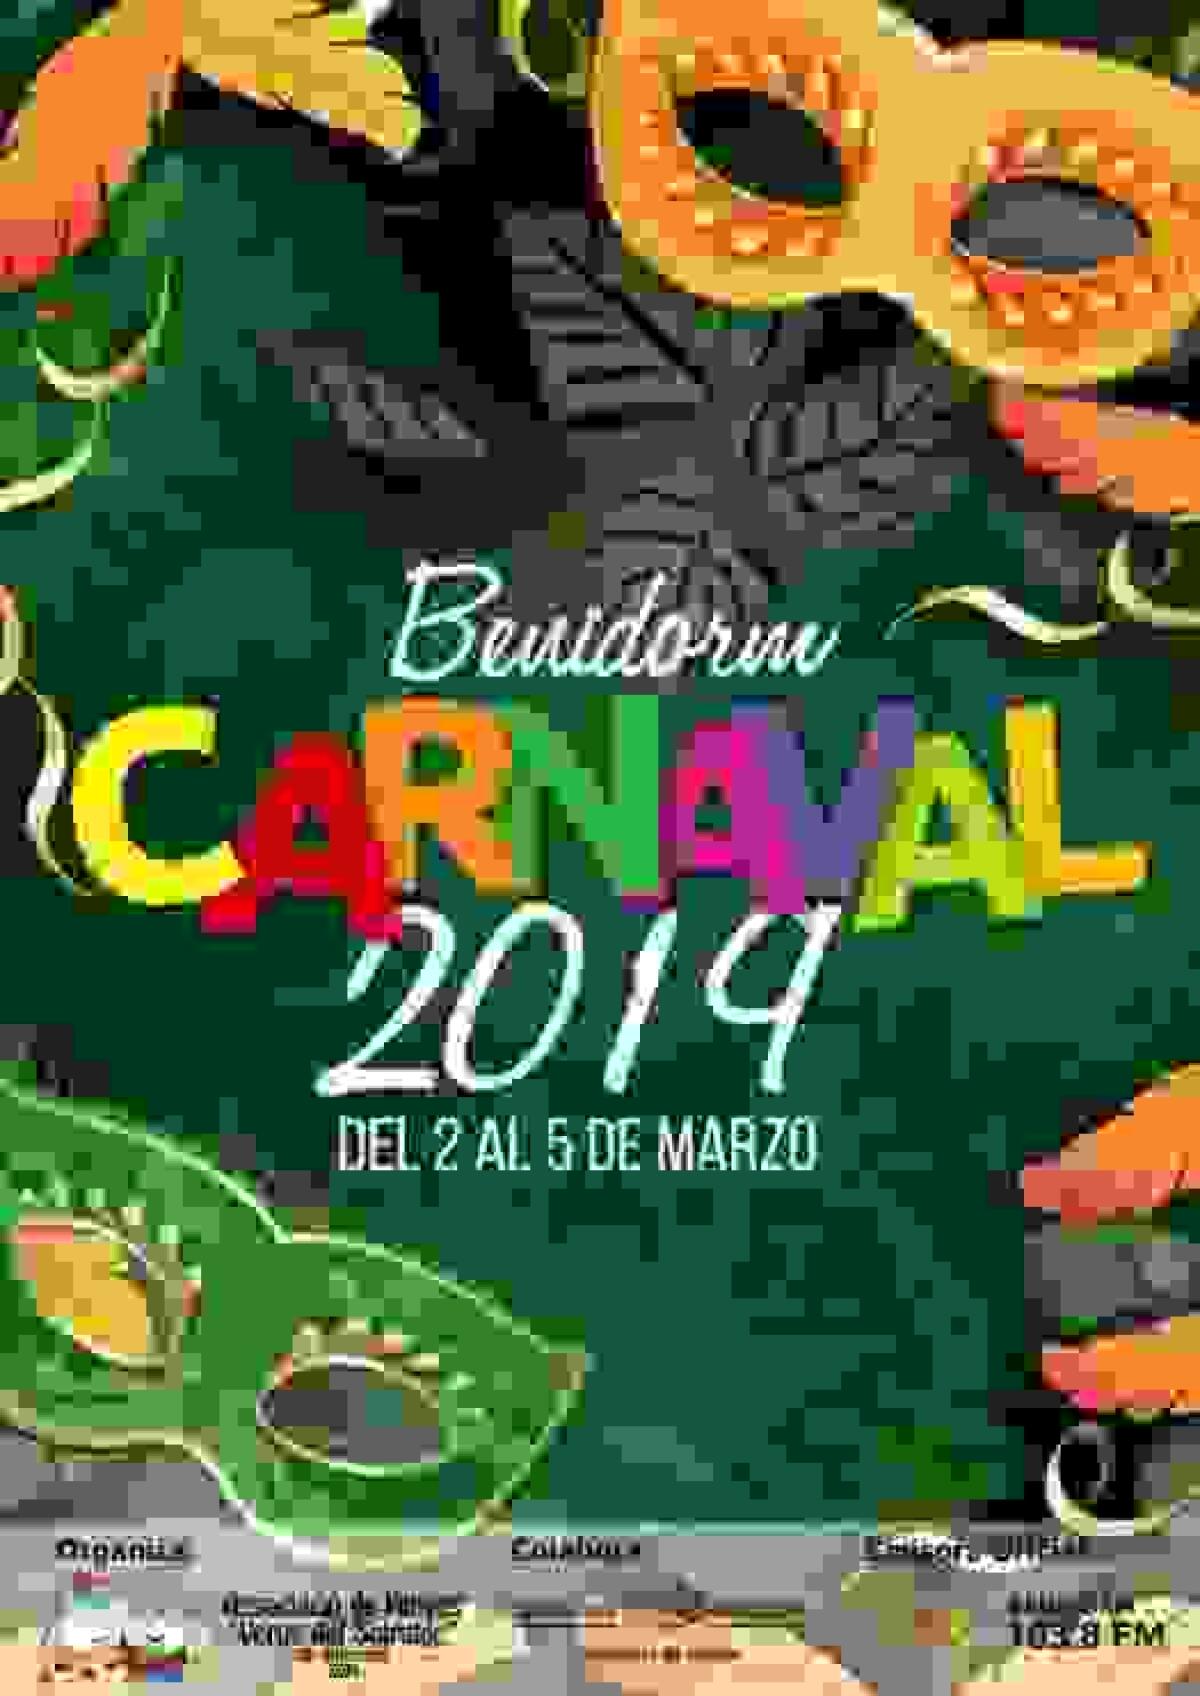  Benidorm // La Associació de Penyes prepara el Carnaval 2019, que tendrá más premios en categoría Adulto